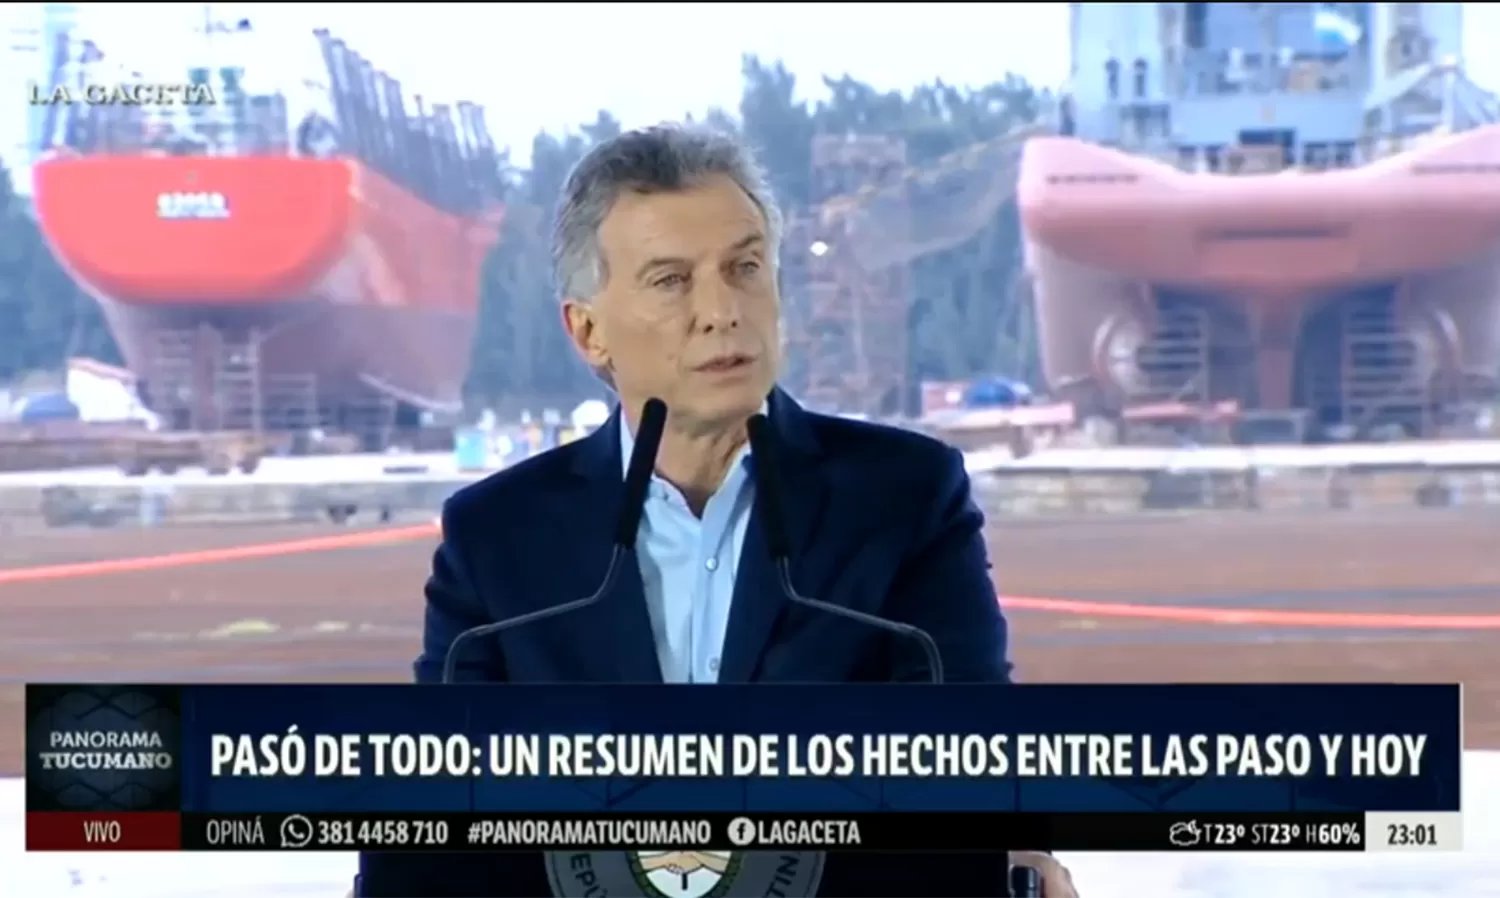 El presidente Macri lanzó un conjunto de medidas para atenuar la sacudida económica tras las PASO.